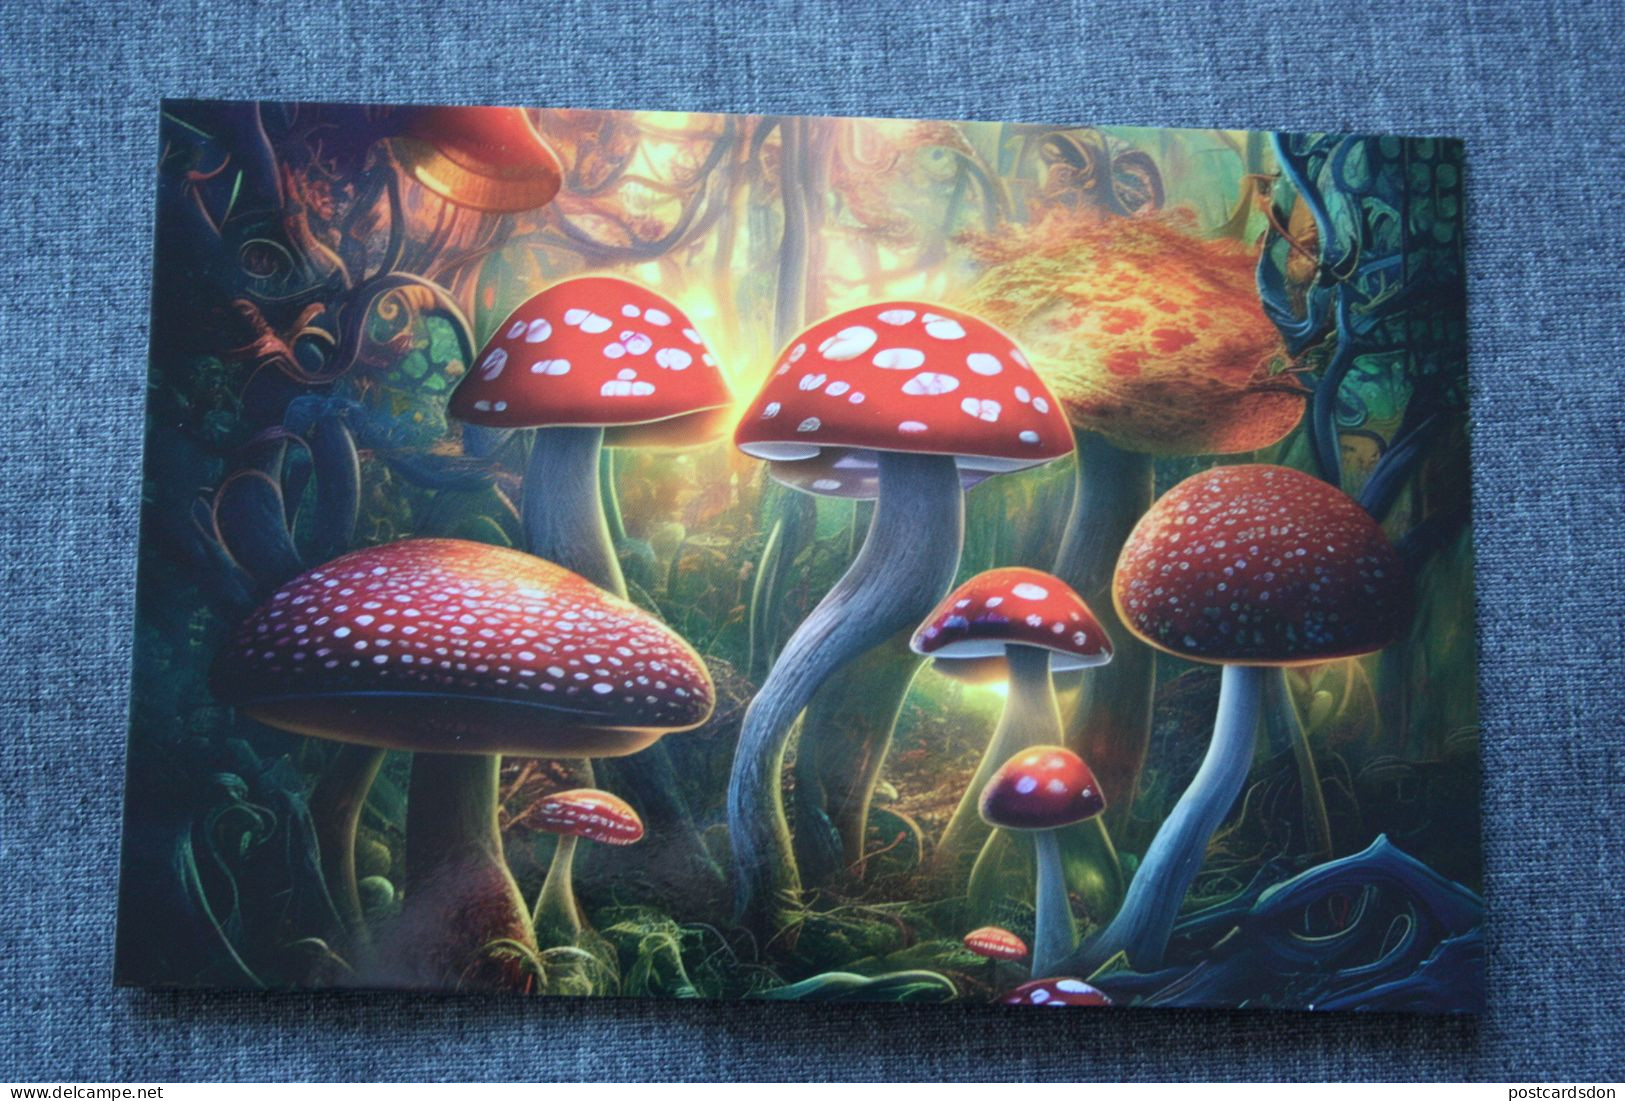 Russia. Amanita. Smart Mushrooms. Mushroom - Champignon - Champignons